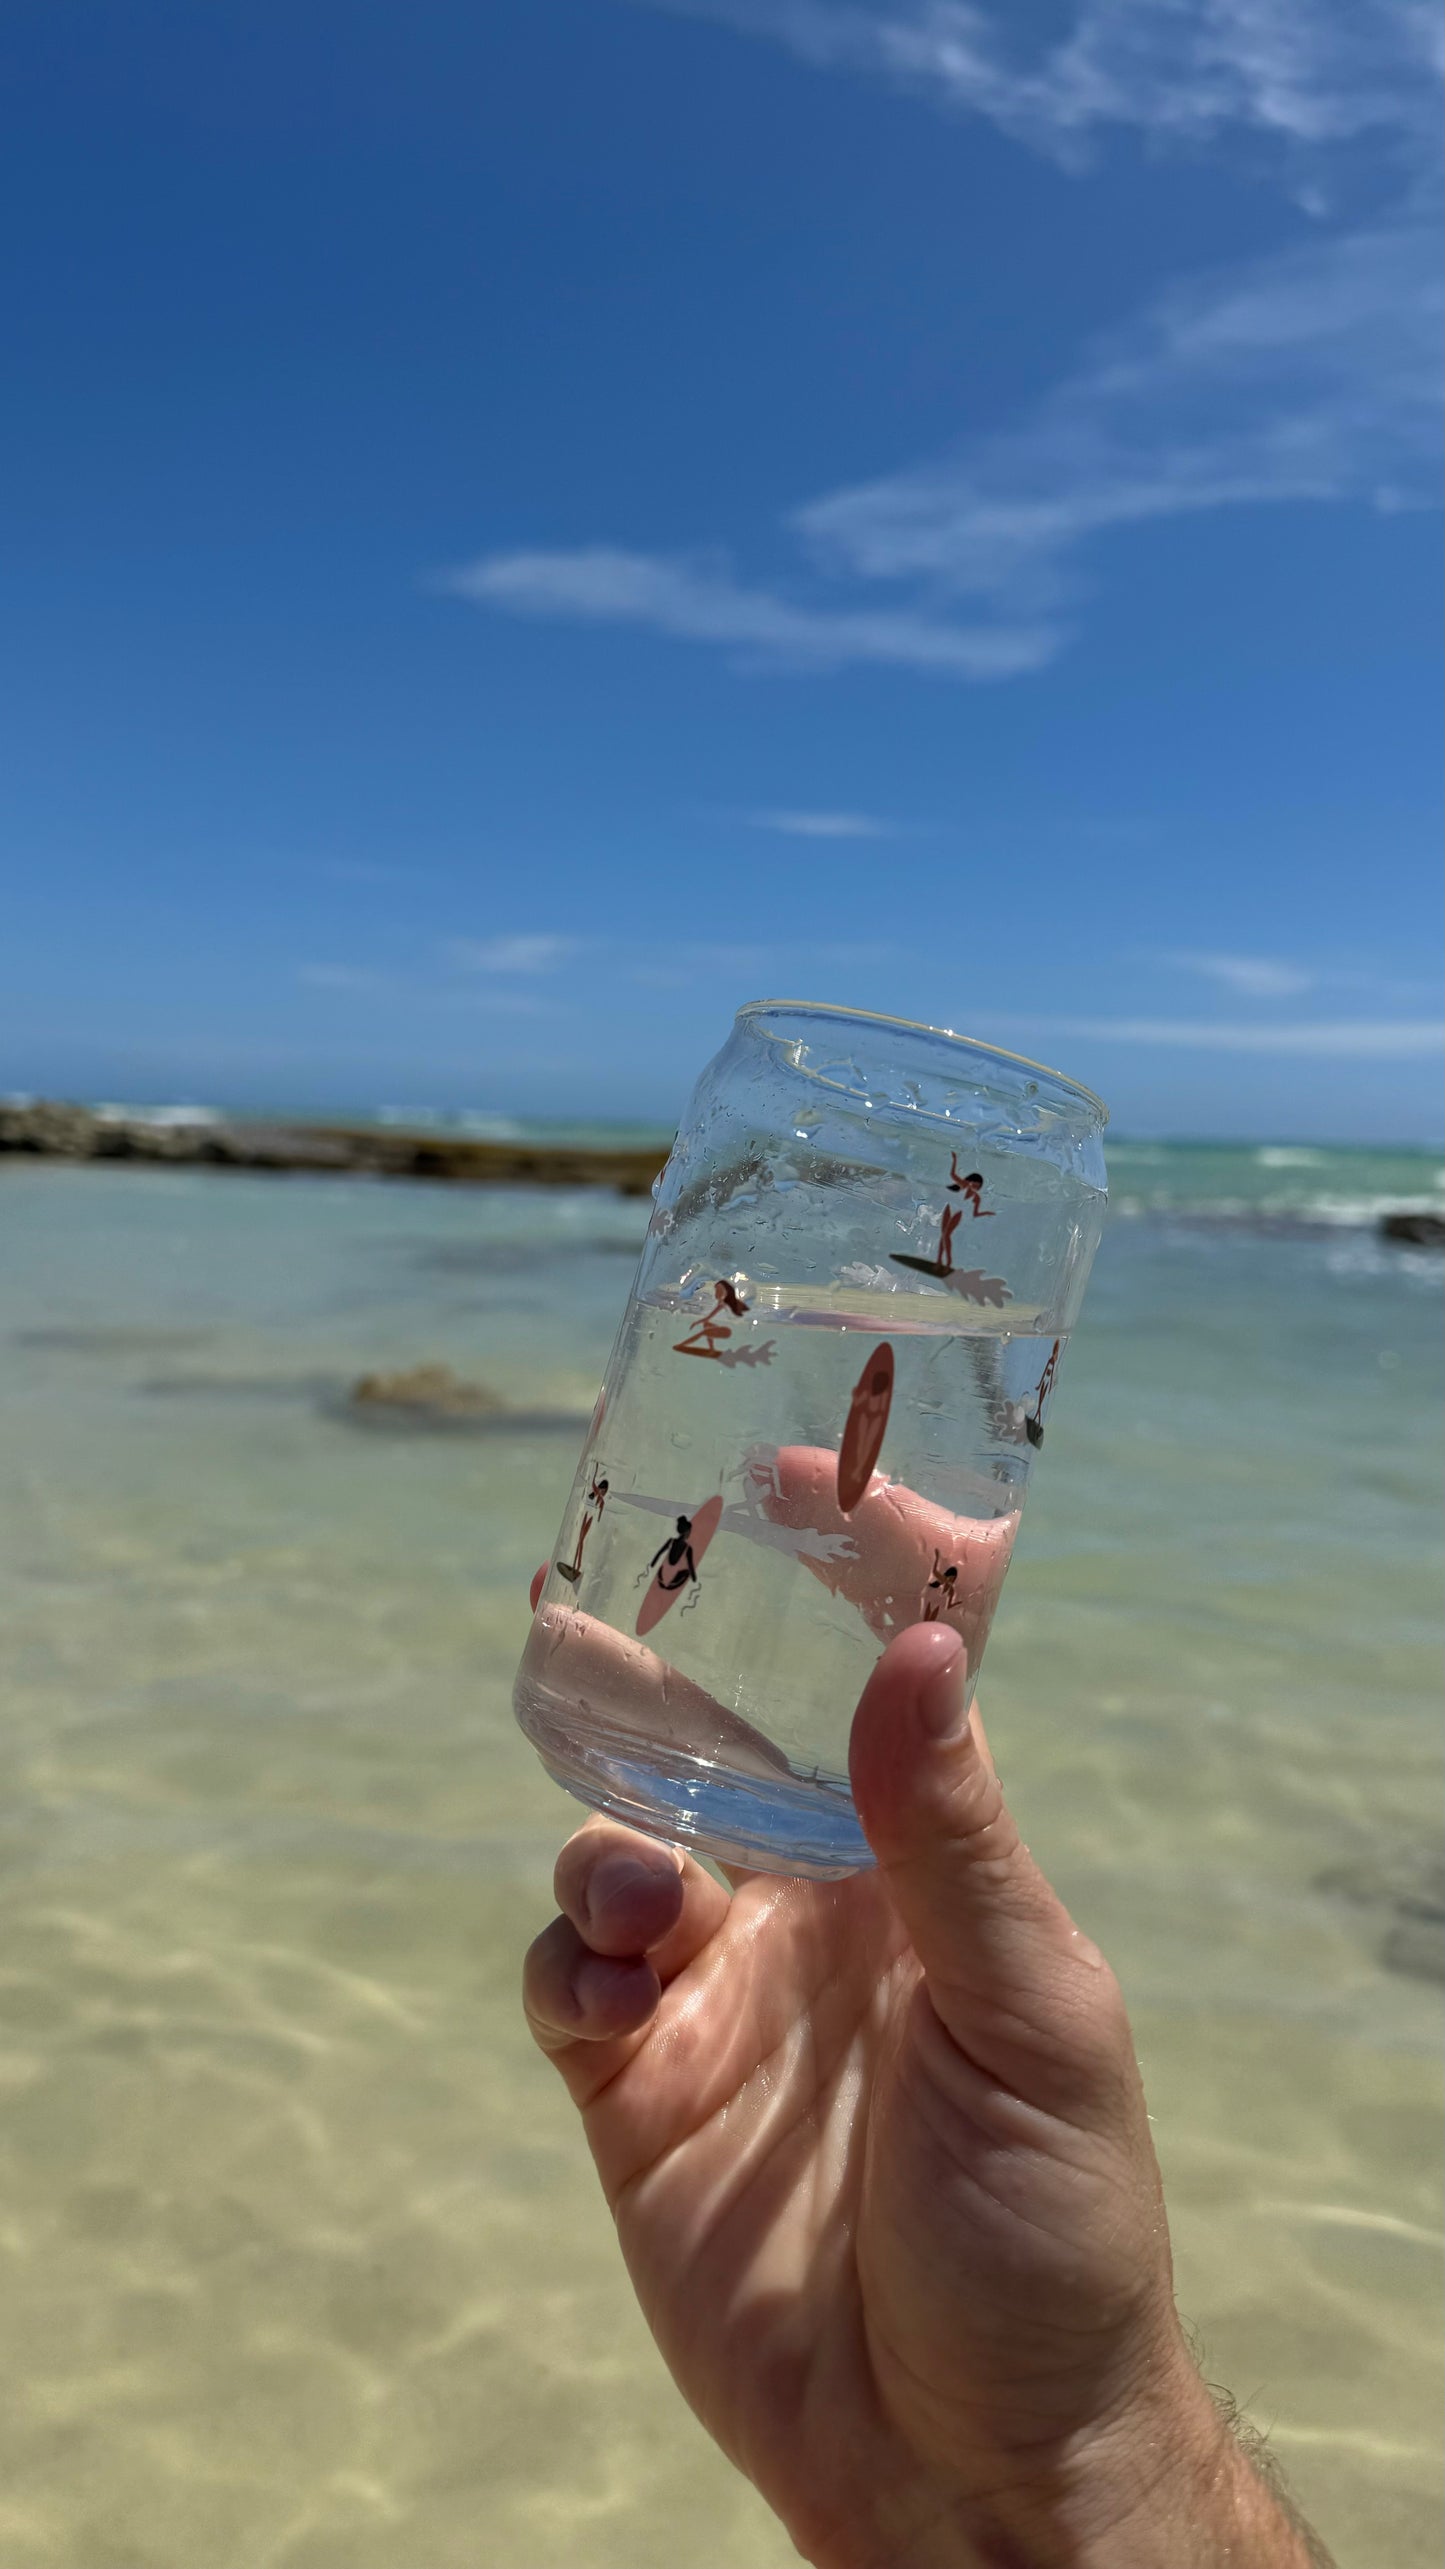 The Waikiki Glass